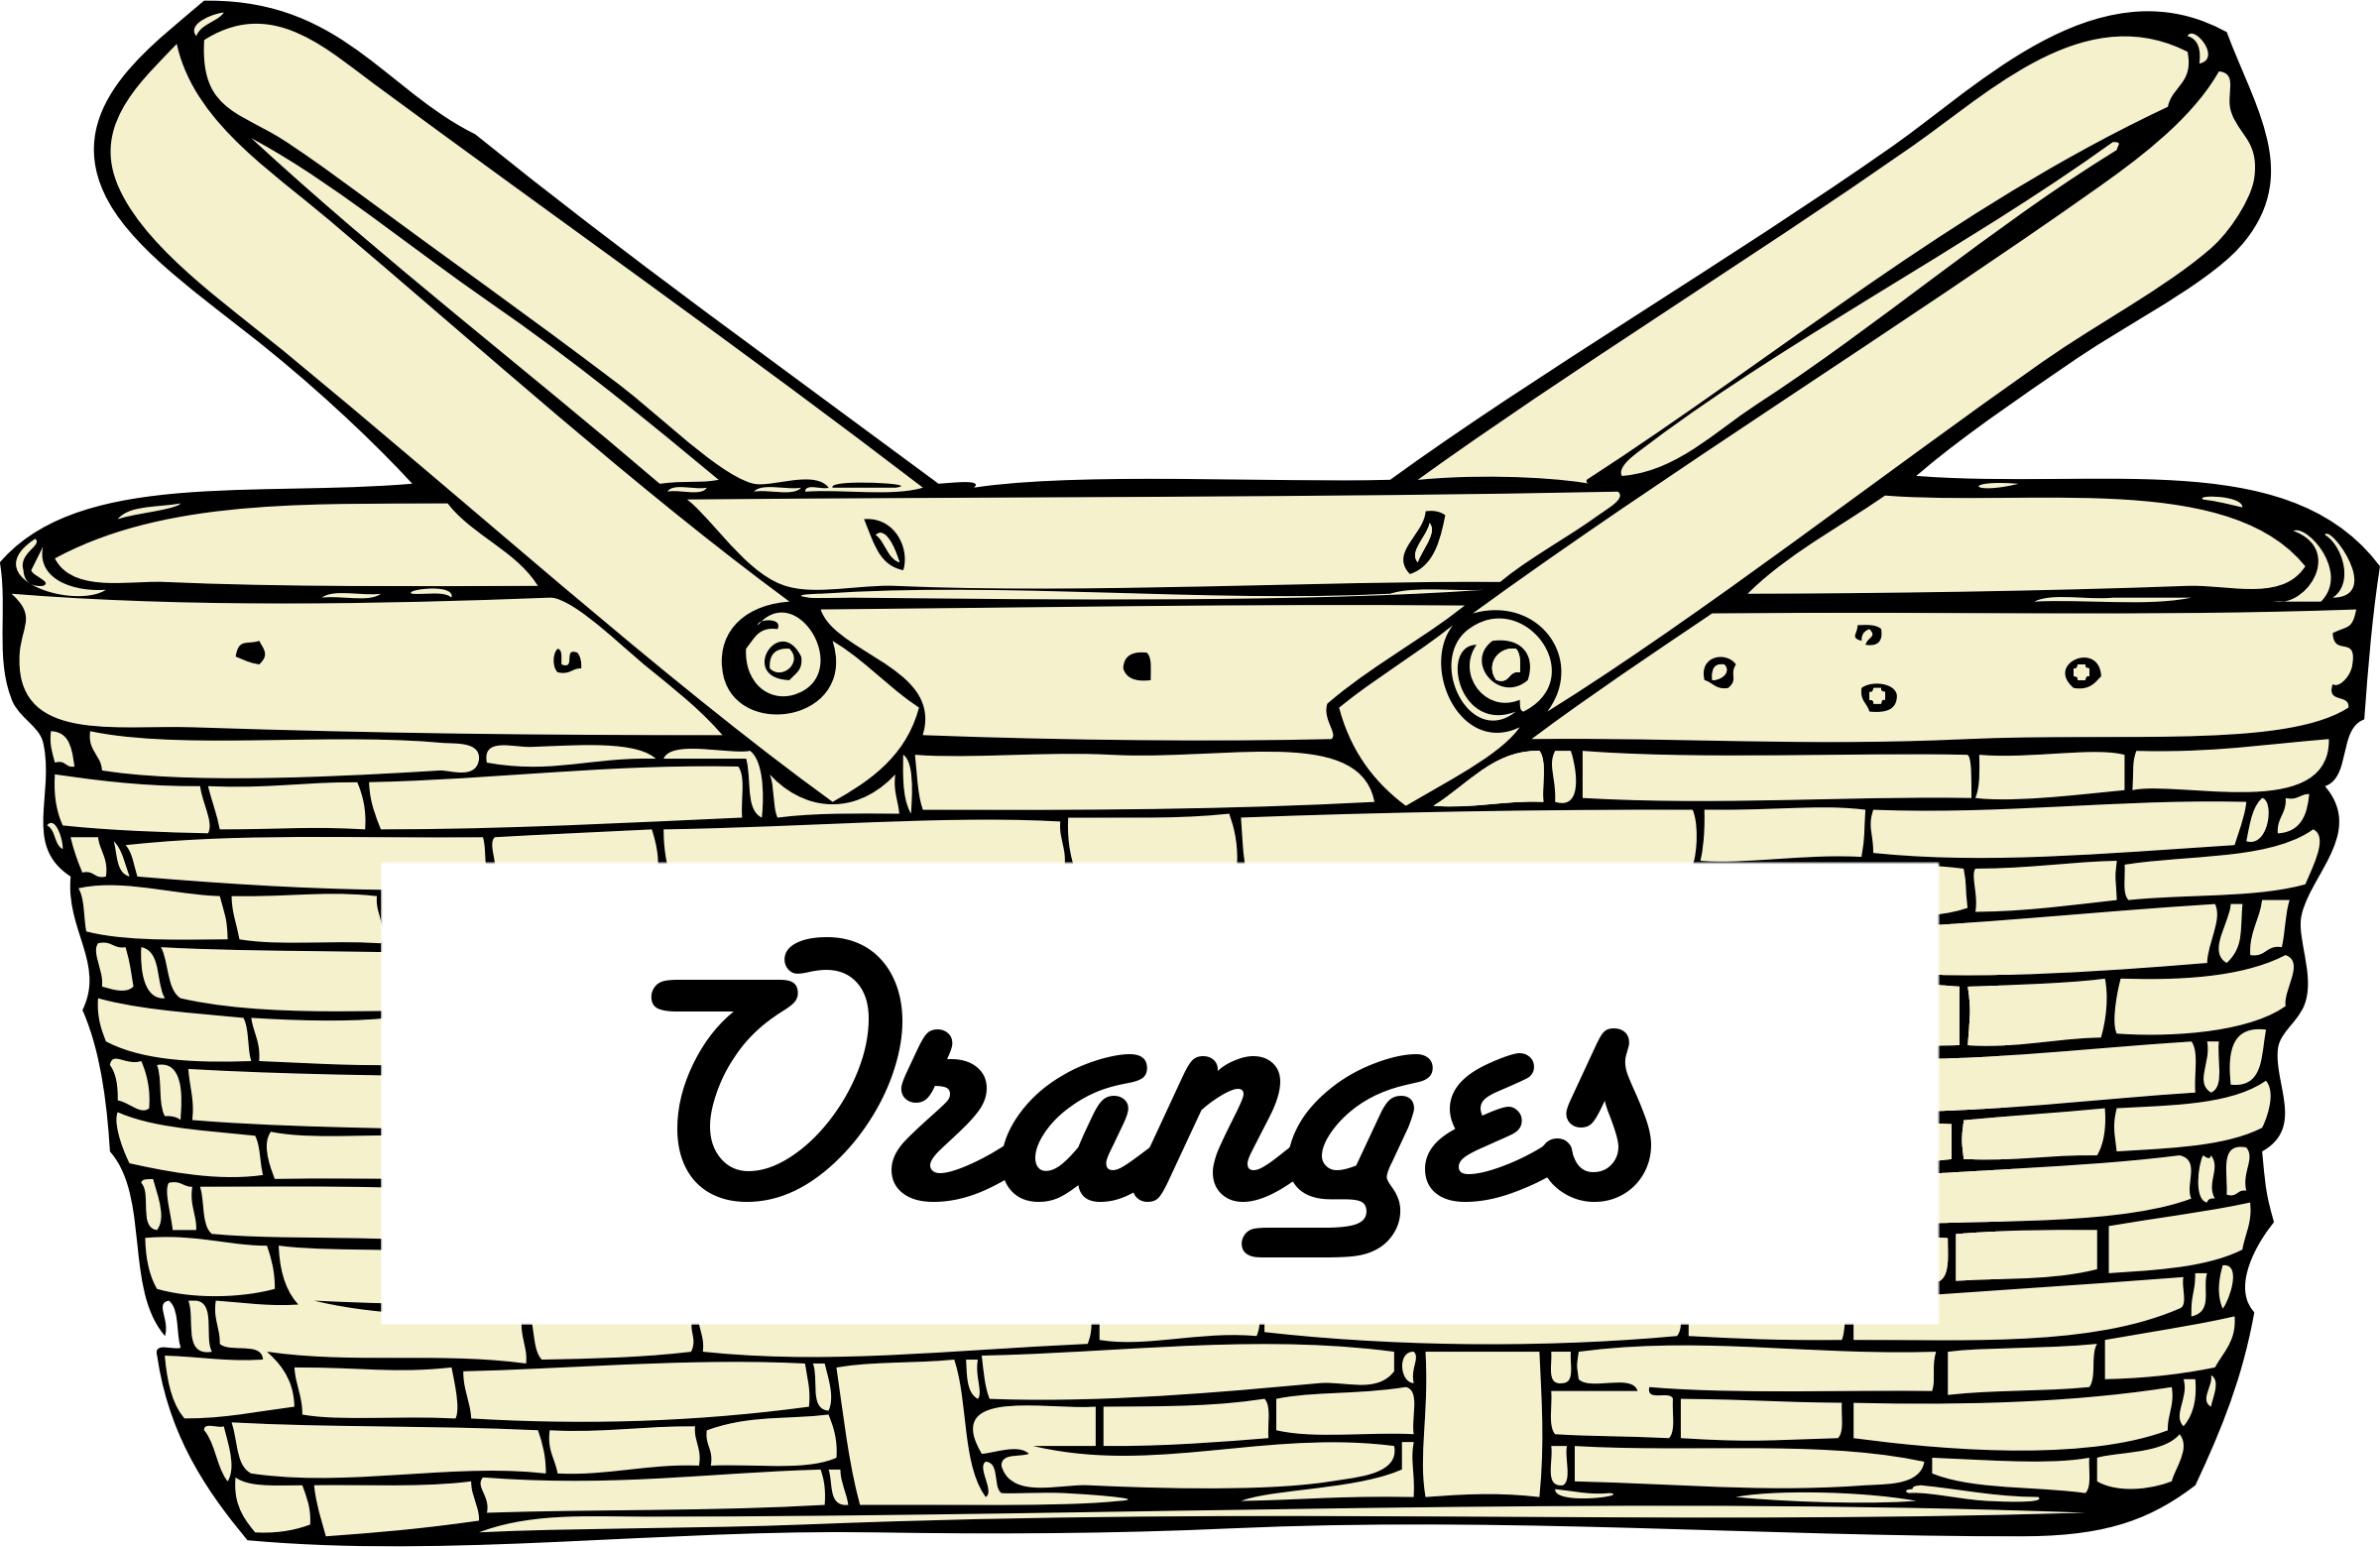 Oranges books